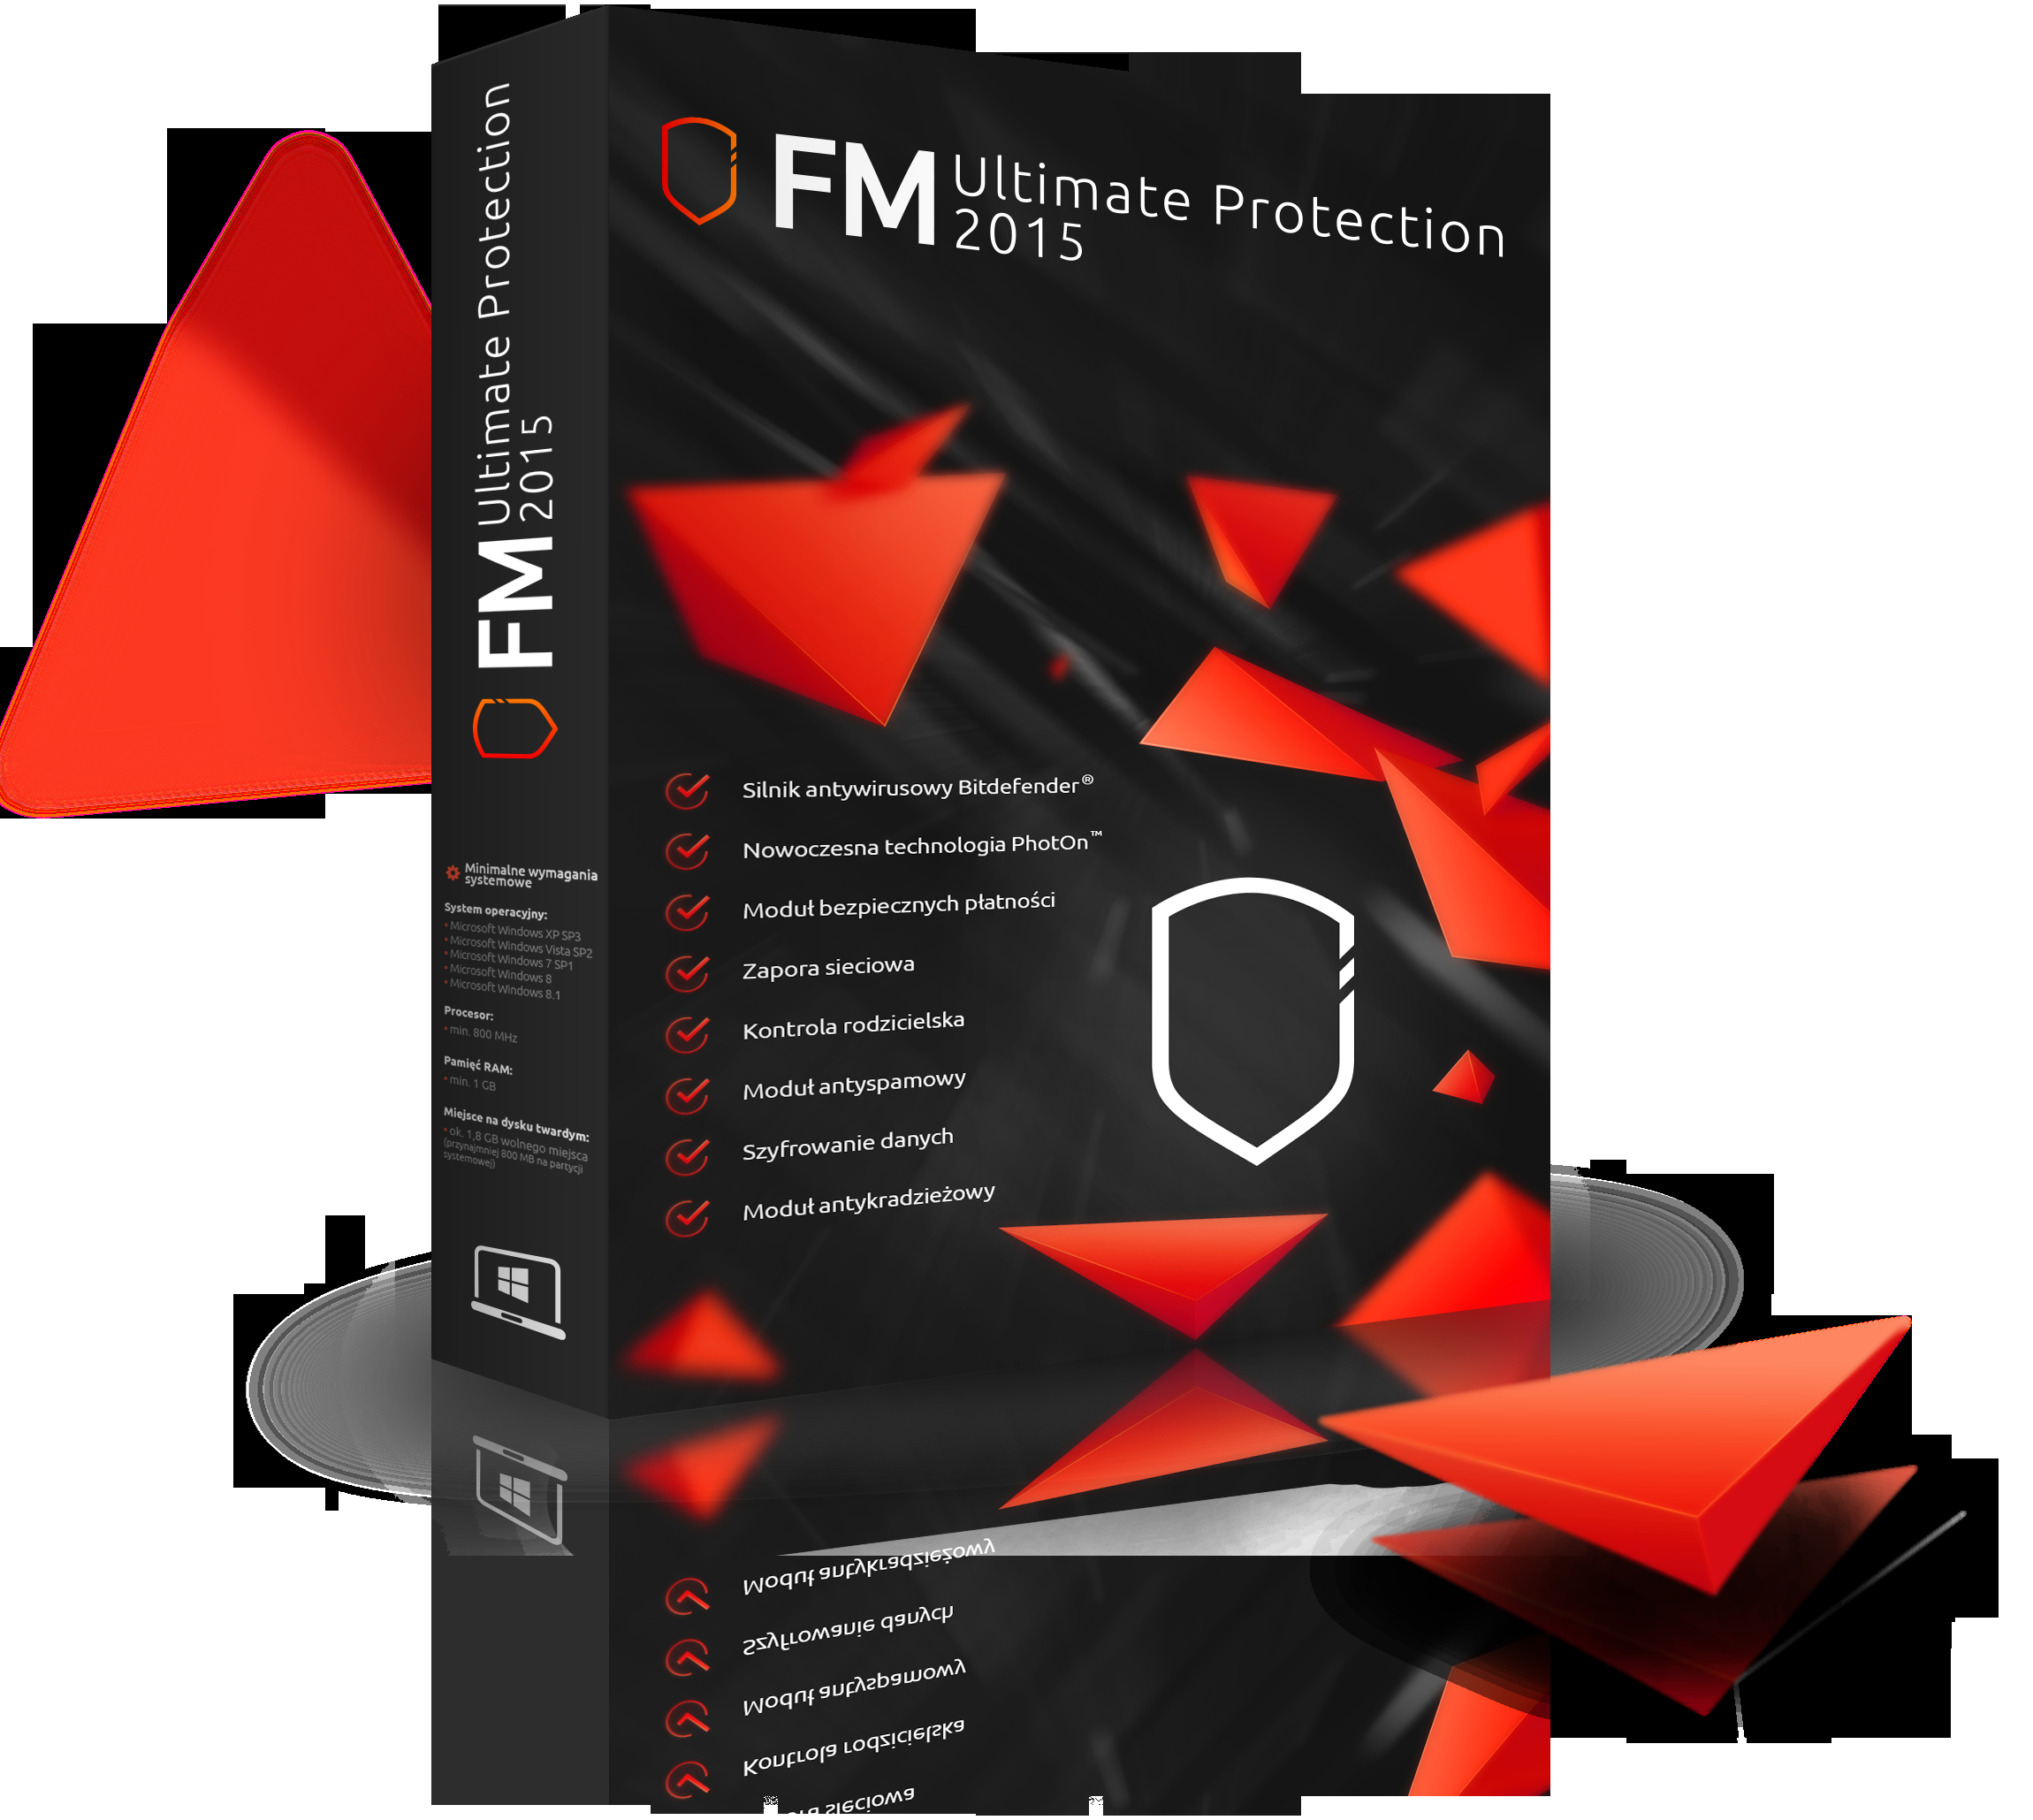 FM Ultimate Protection 2015 zawiera najnowocześniejsze na rynku oprogramowania antywirusowego technologie, które zapewniają niezrównaną ochronę Twojego komputera PC.